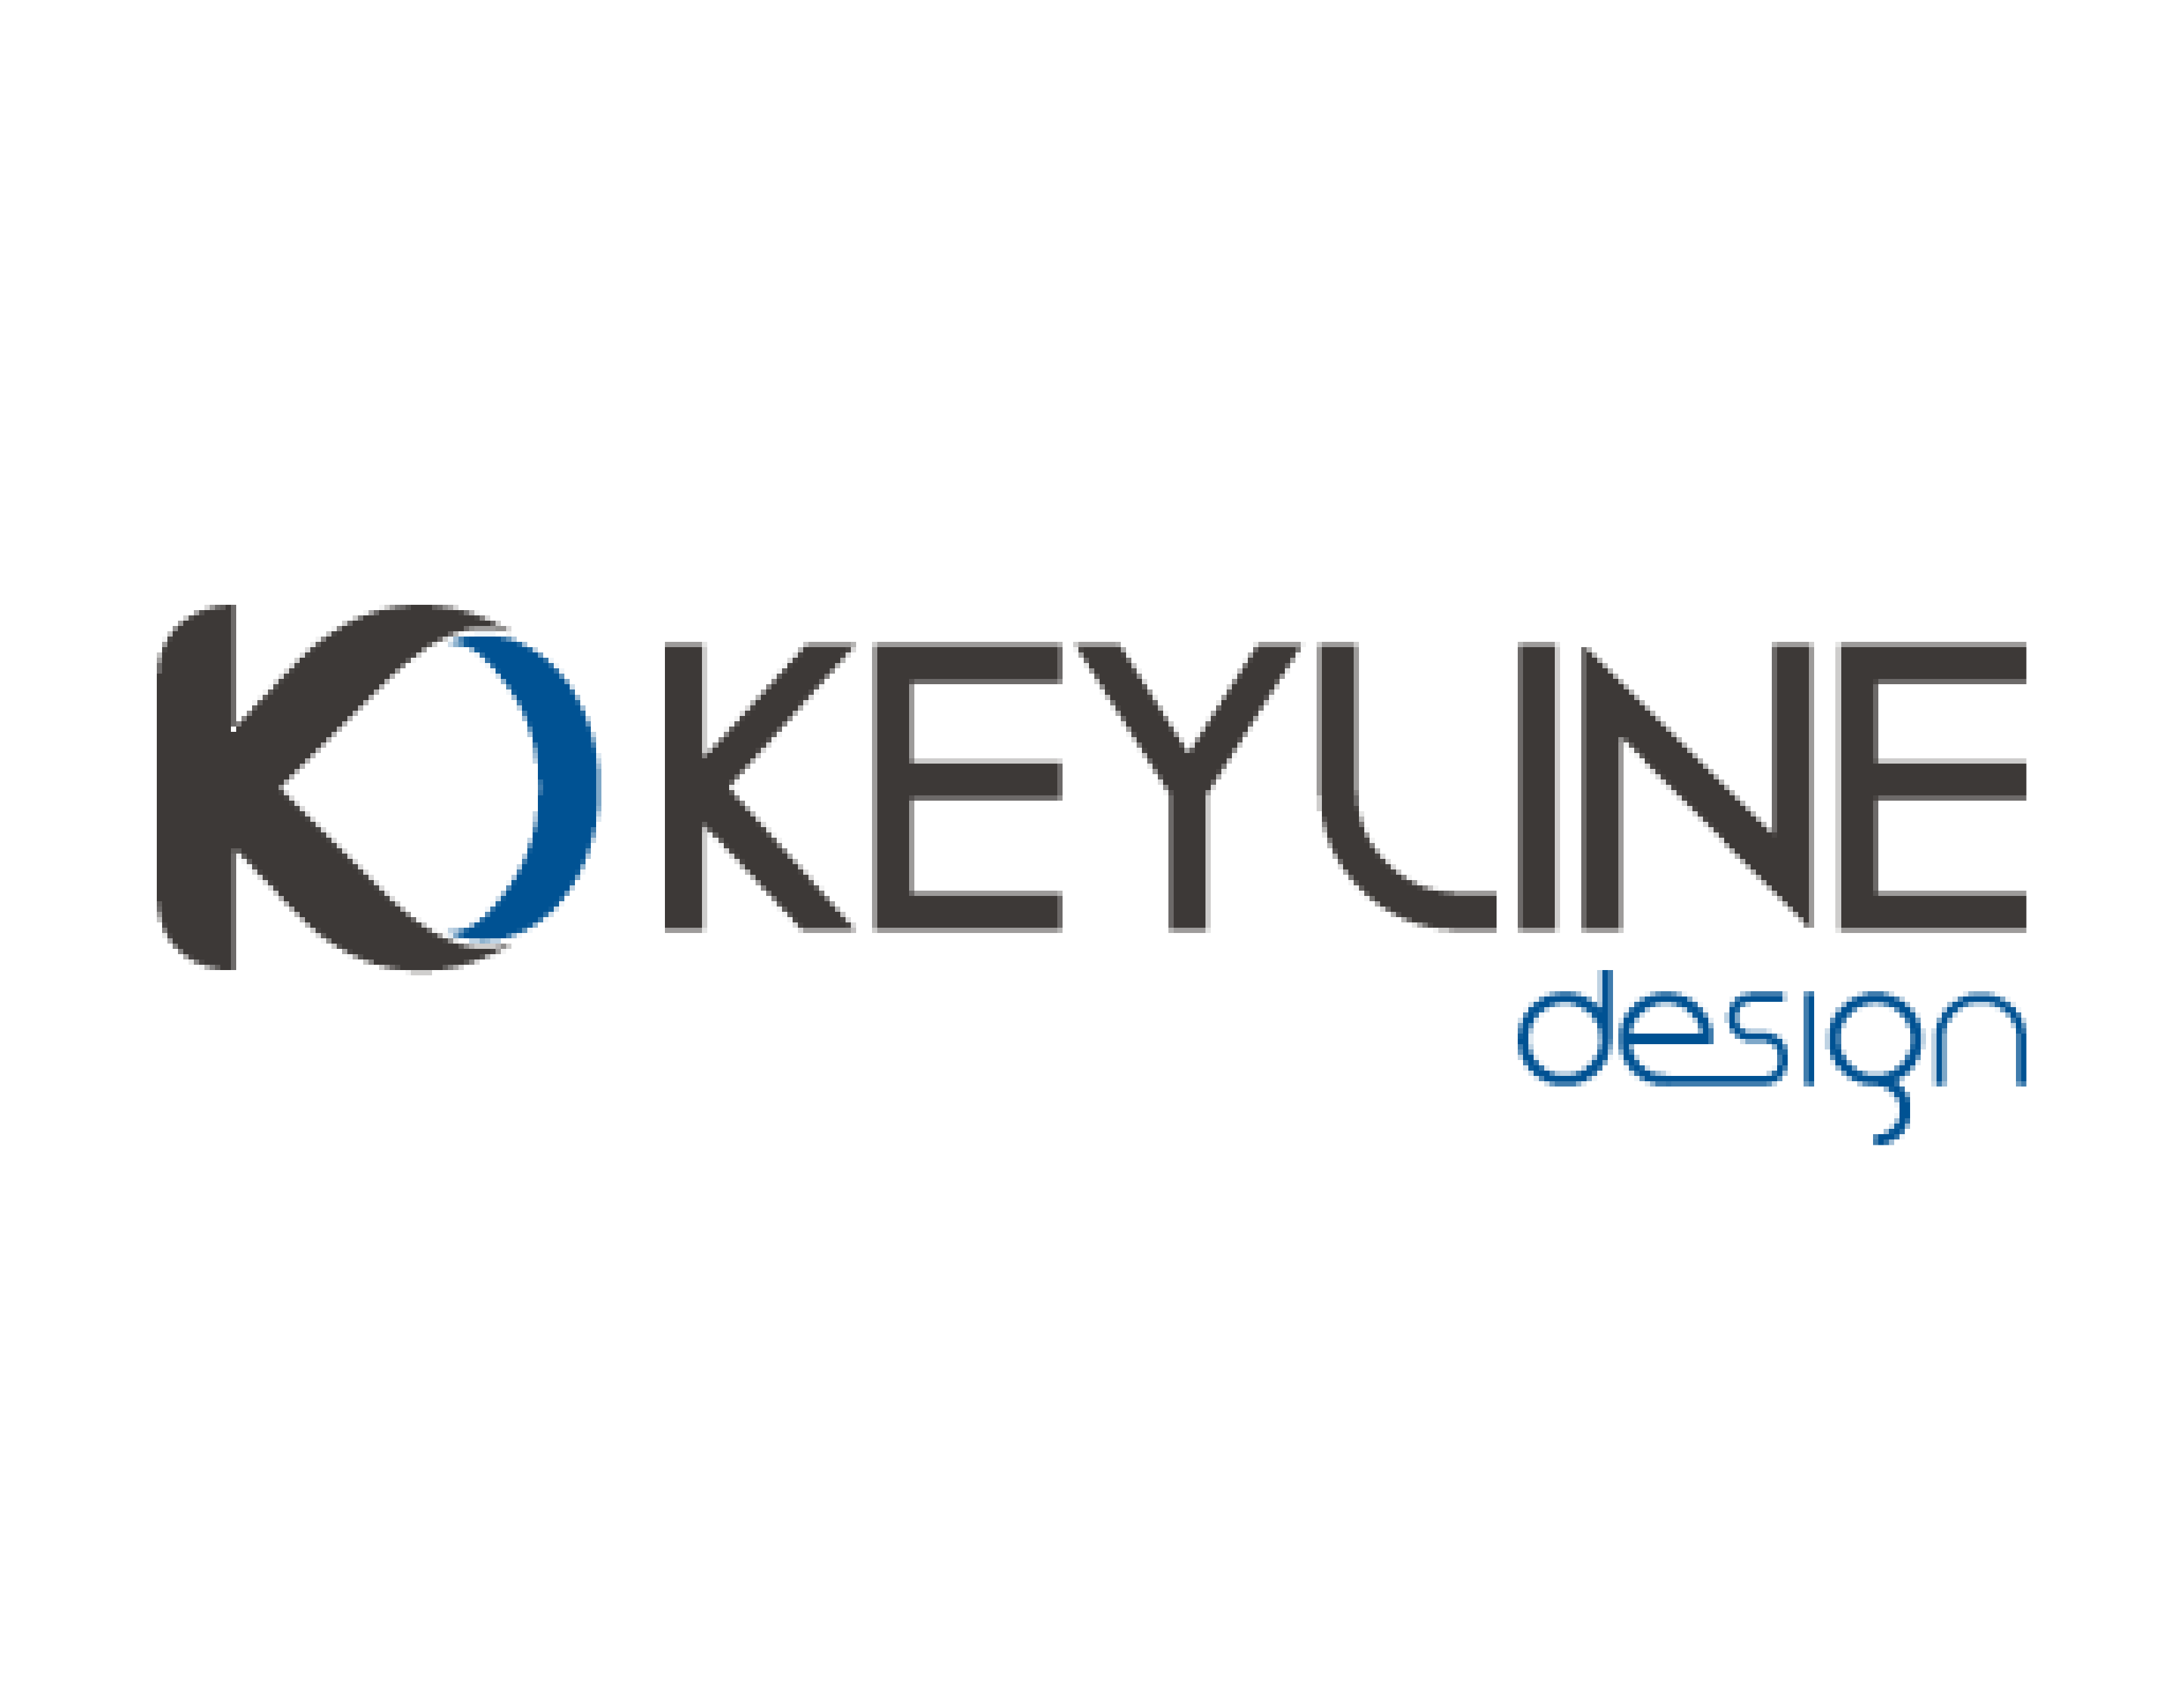 Keyline Design